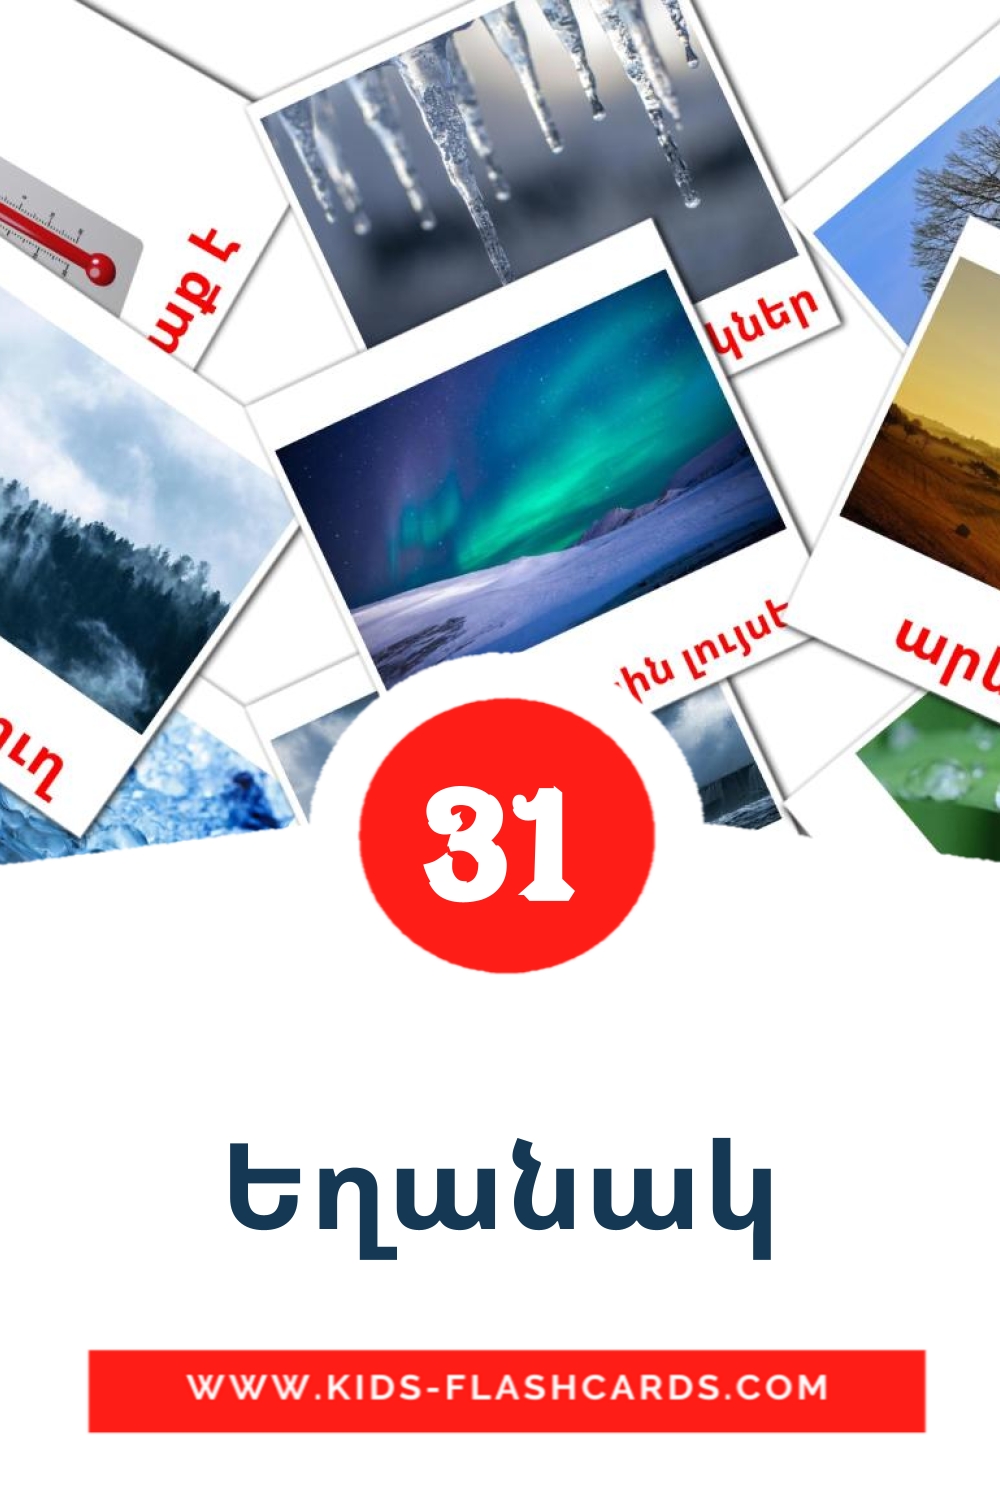 31 Եղանակ fotokaarten voor kleuters in het armeense